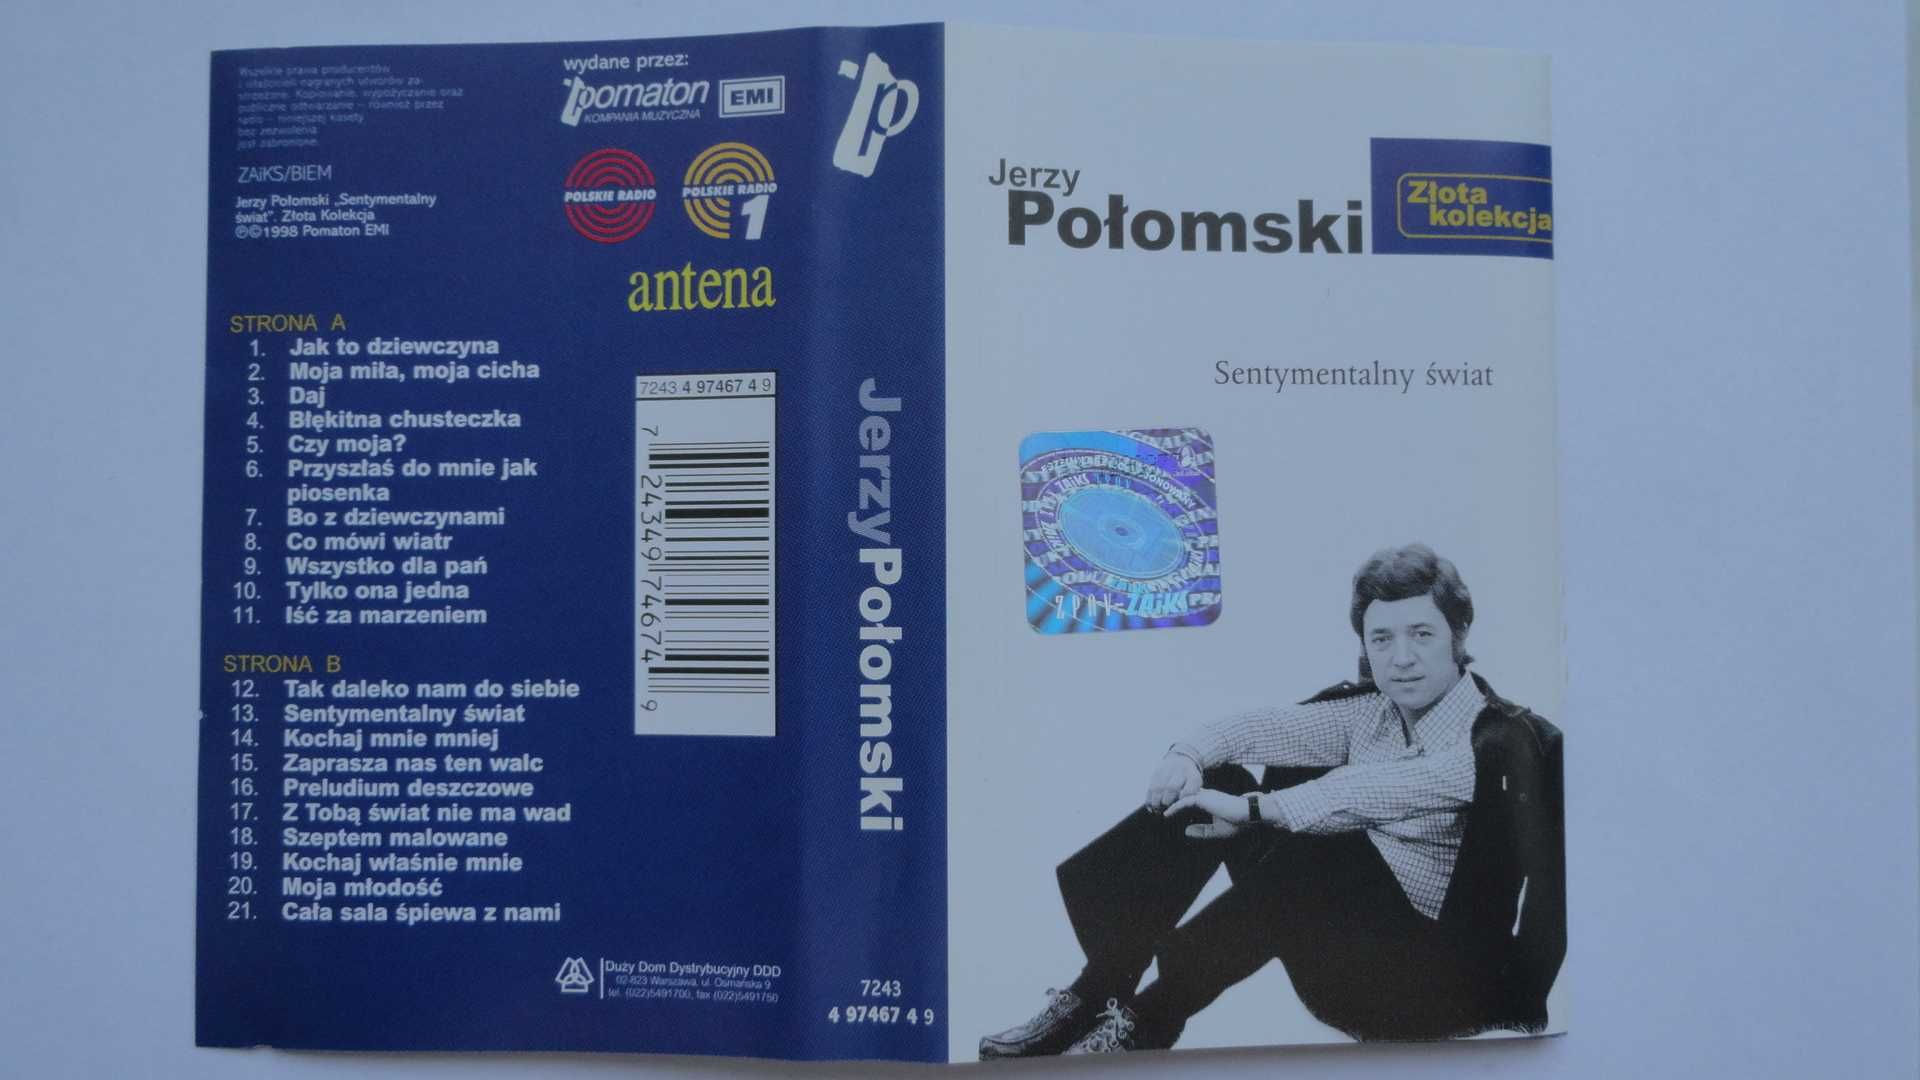 Jerzy Połomski - "Sentymentalny świat"- Złota kolekcja - kaseta audio.